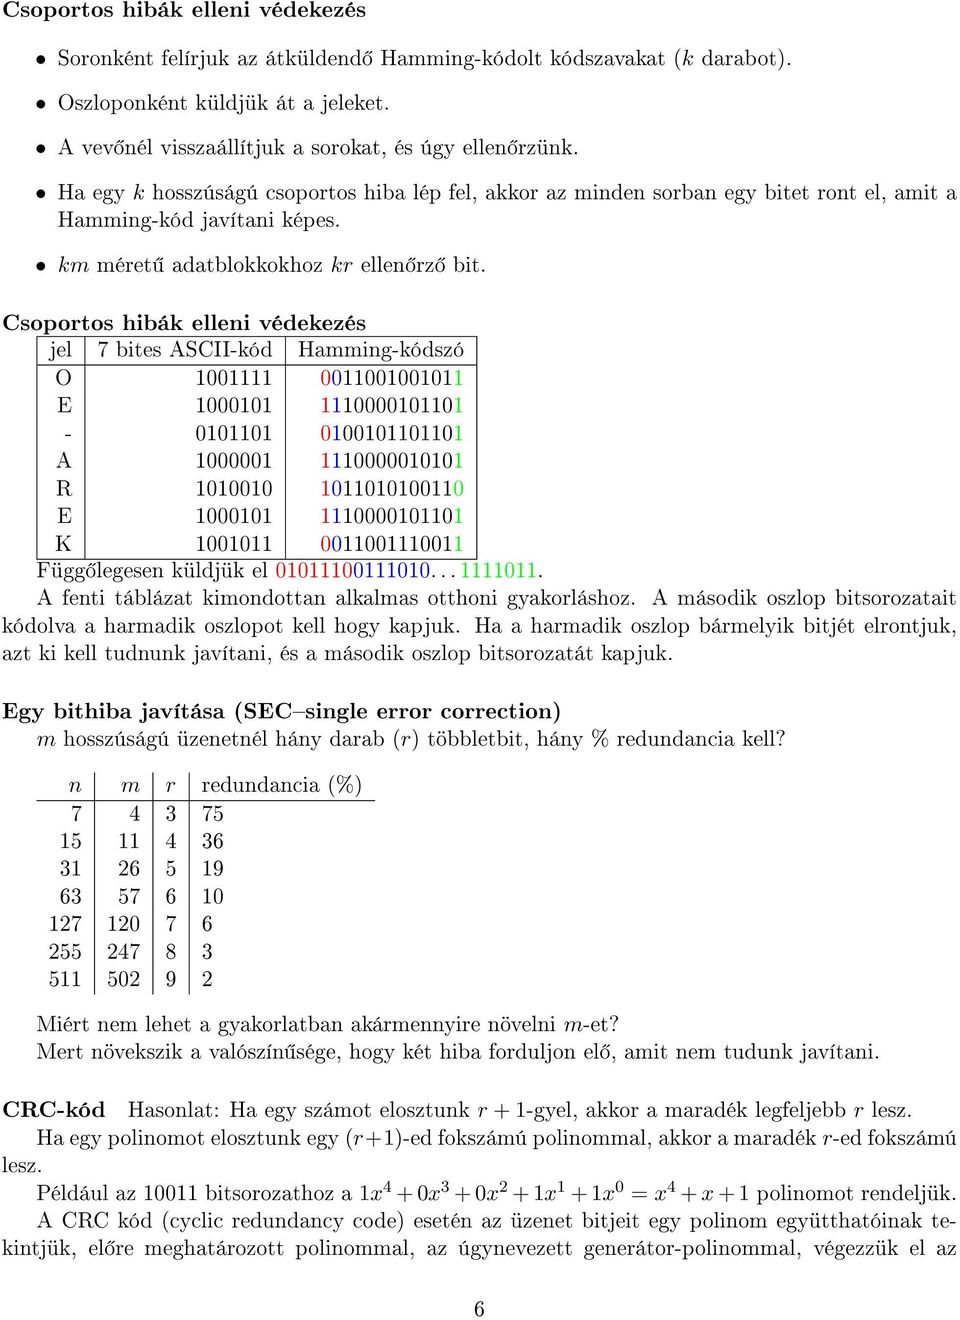 Csoportos hibák elleni védekezés jel 7 bites ASCII-kód Hamming-kódszó O 1001111 001100100 E 1000101 111000001-001 010001101 A 1000001 1110000010101 R 1010010 010100110 E 1000101 111000001 K 100